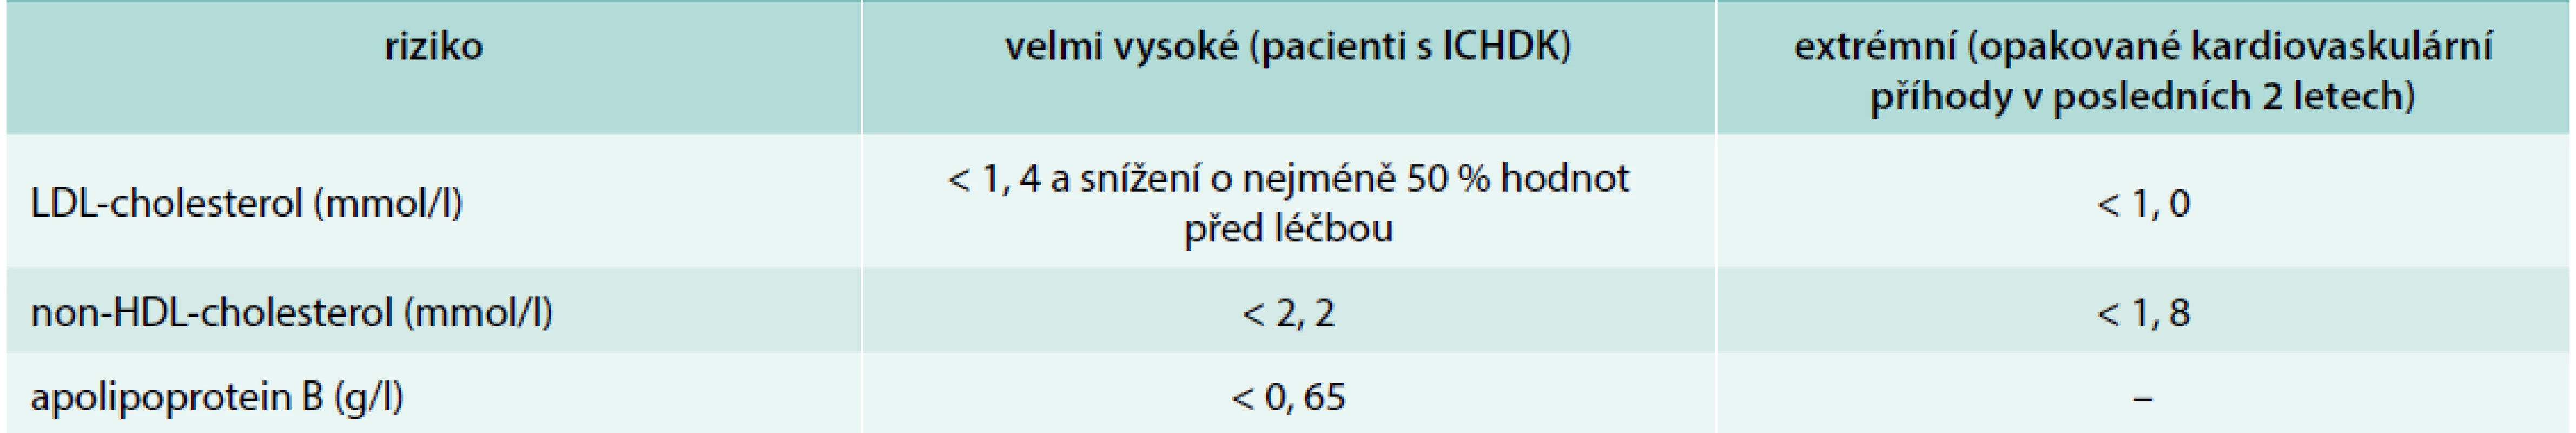 Cílové hodnoty u pacientů s ICHDK. Upraveno podle [12]